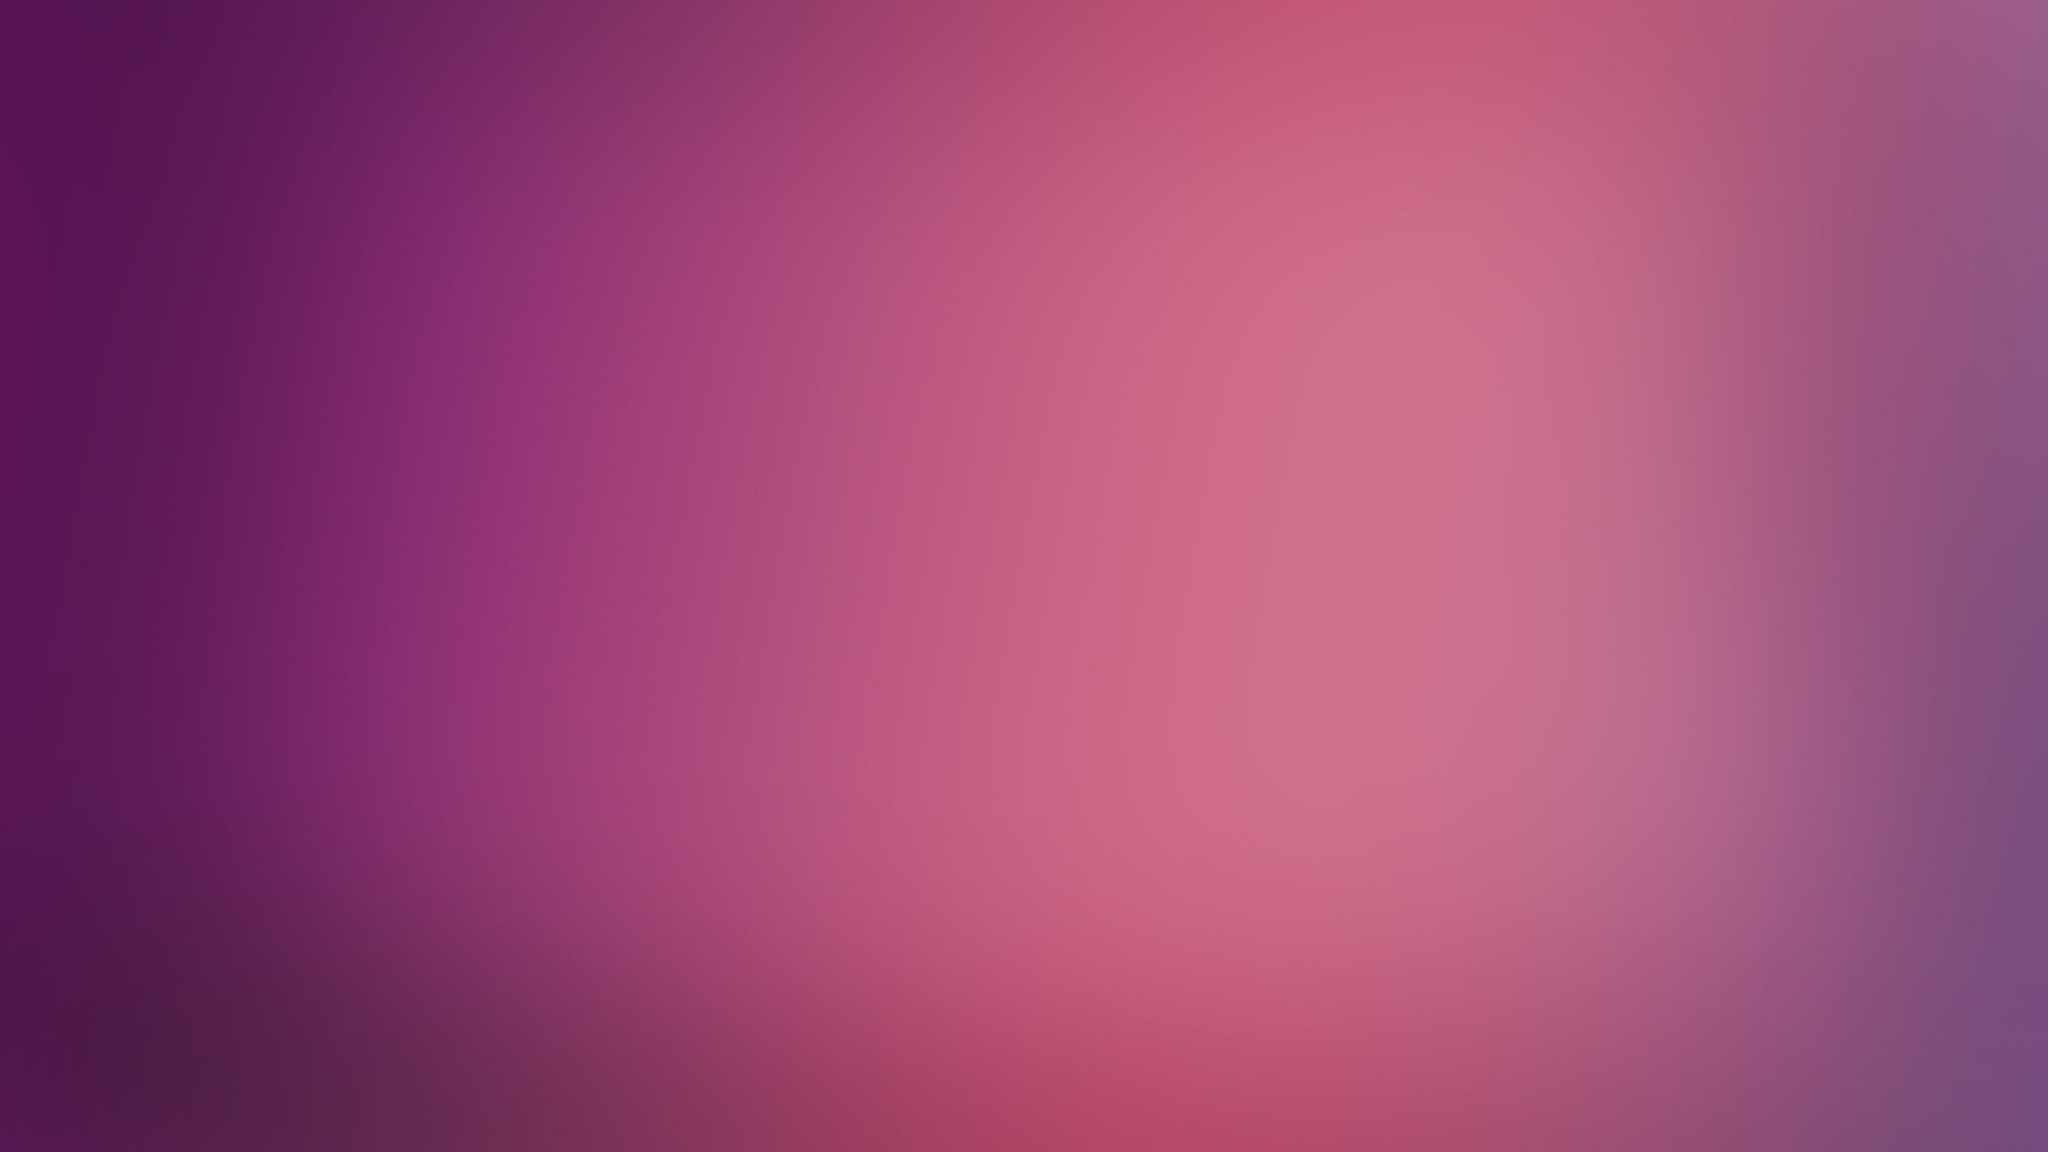 2048x1152 Light Pink Solid Color Background Hot Pink Solid Color Backgr...